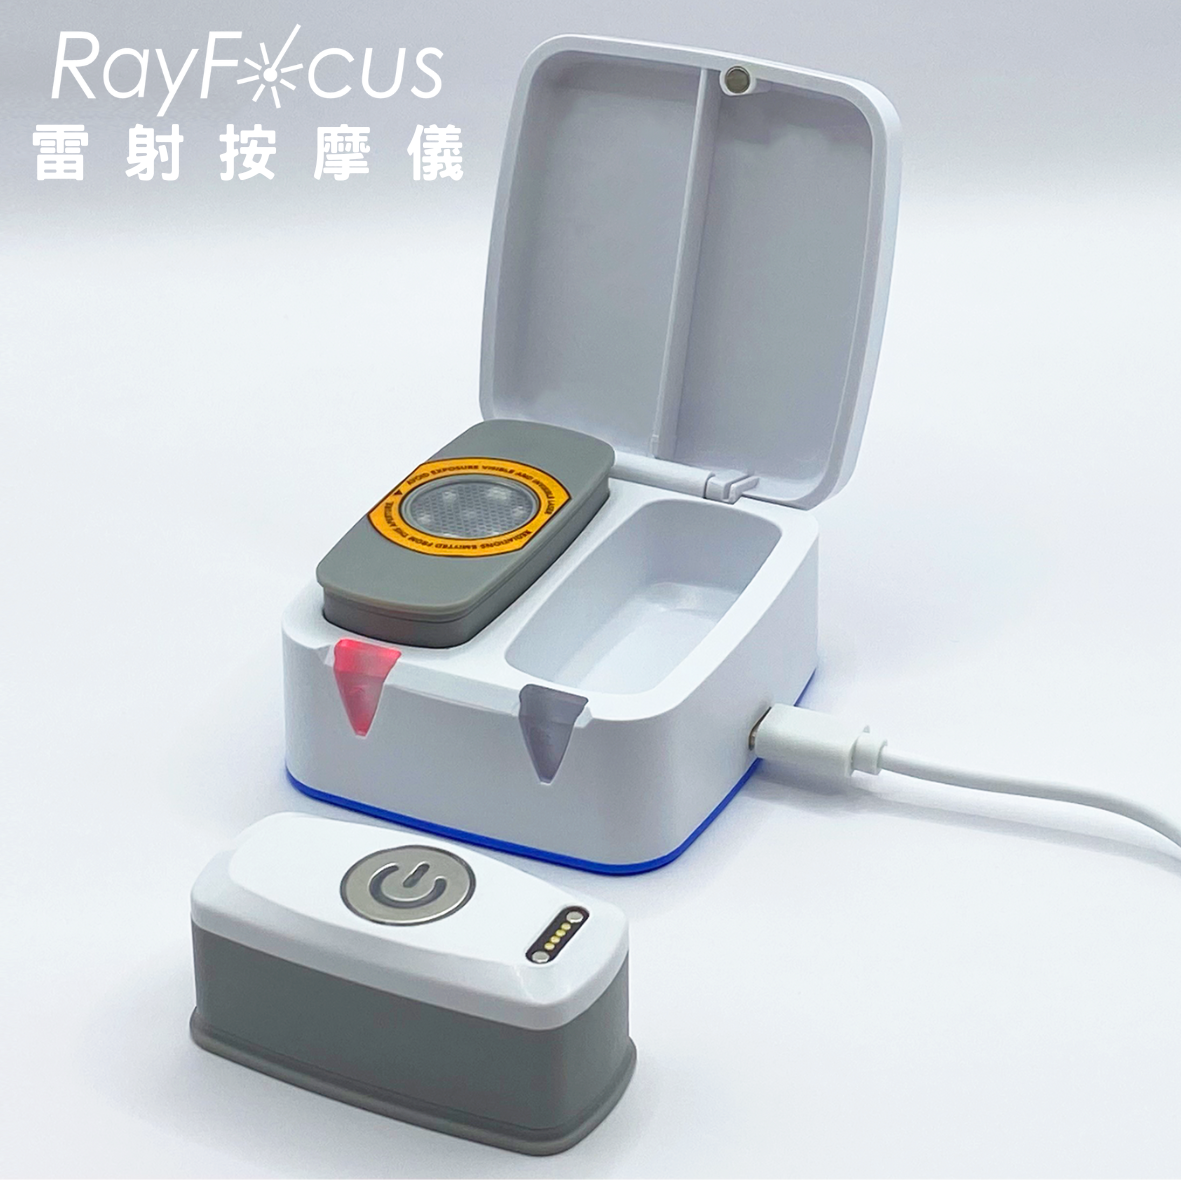 RayFocus 1 Laser Massager